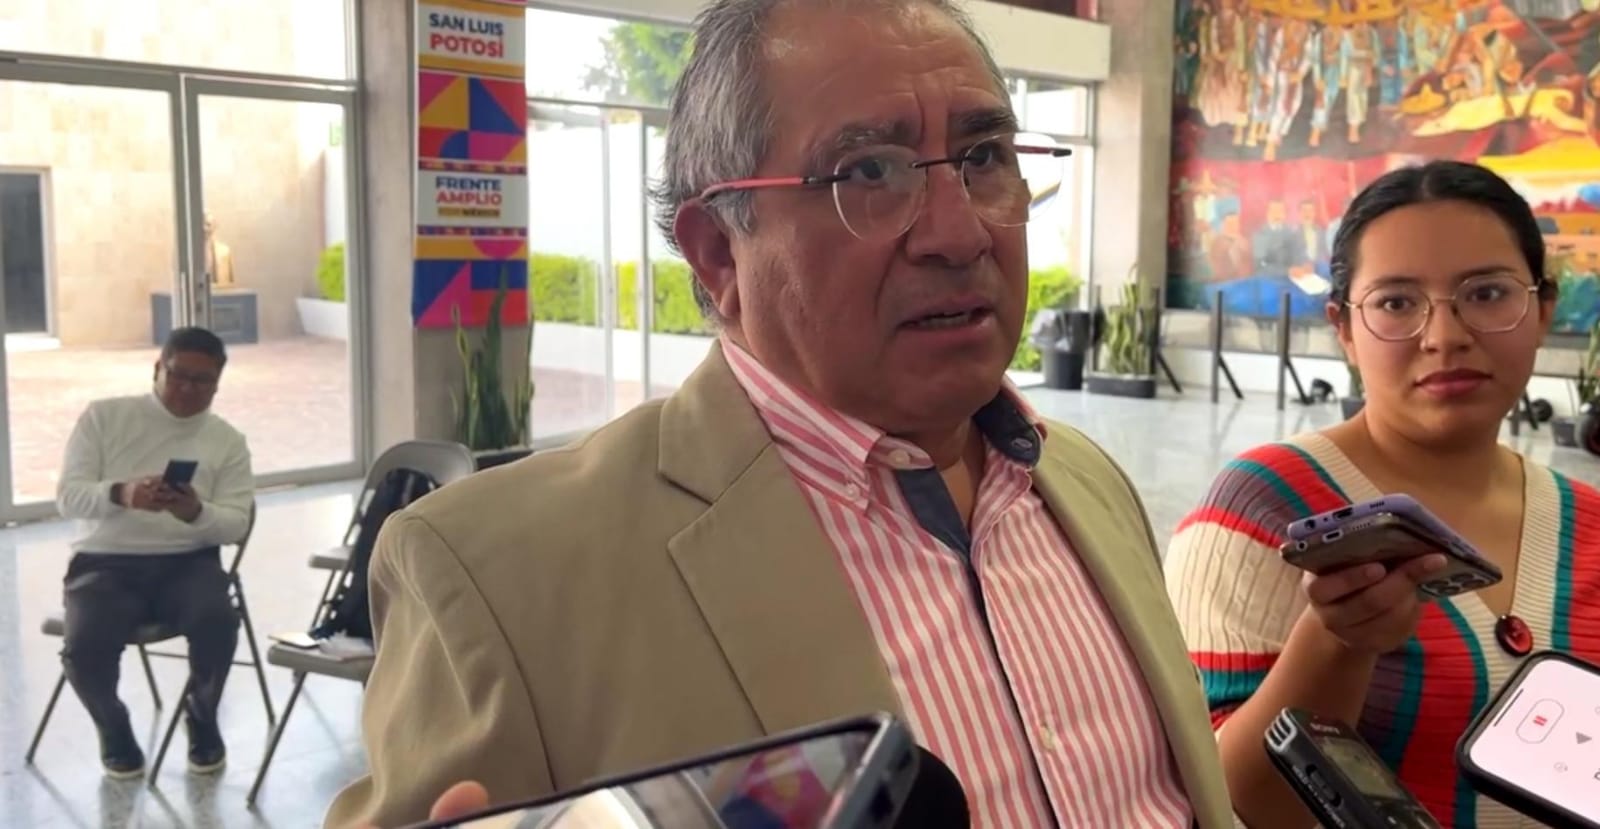 El PRI le contesta a Guajardo: dicen que no conoce la normativa y que si pueden participar los panistas, que lo marca en las letras chiquitas